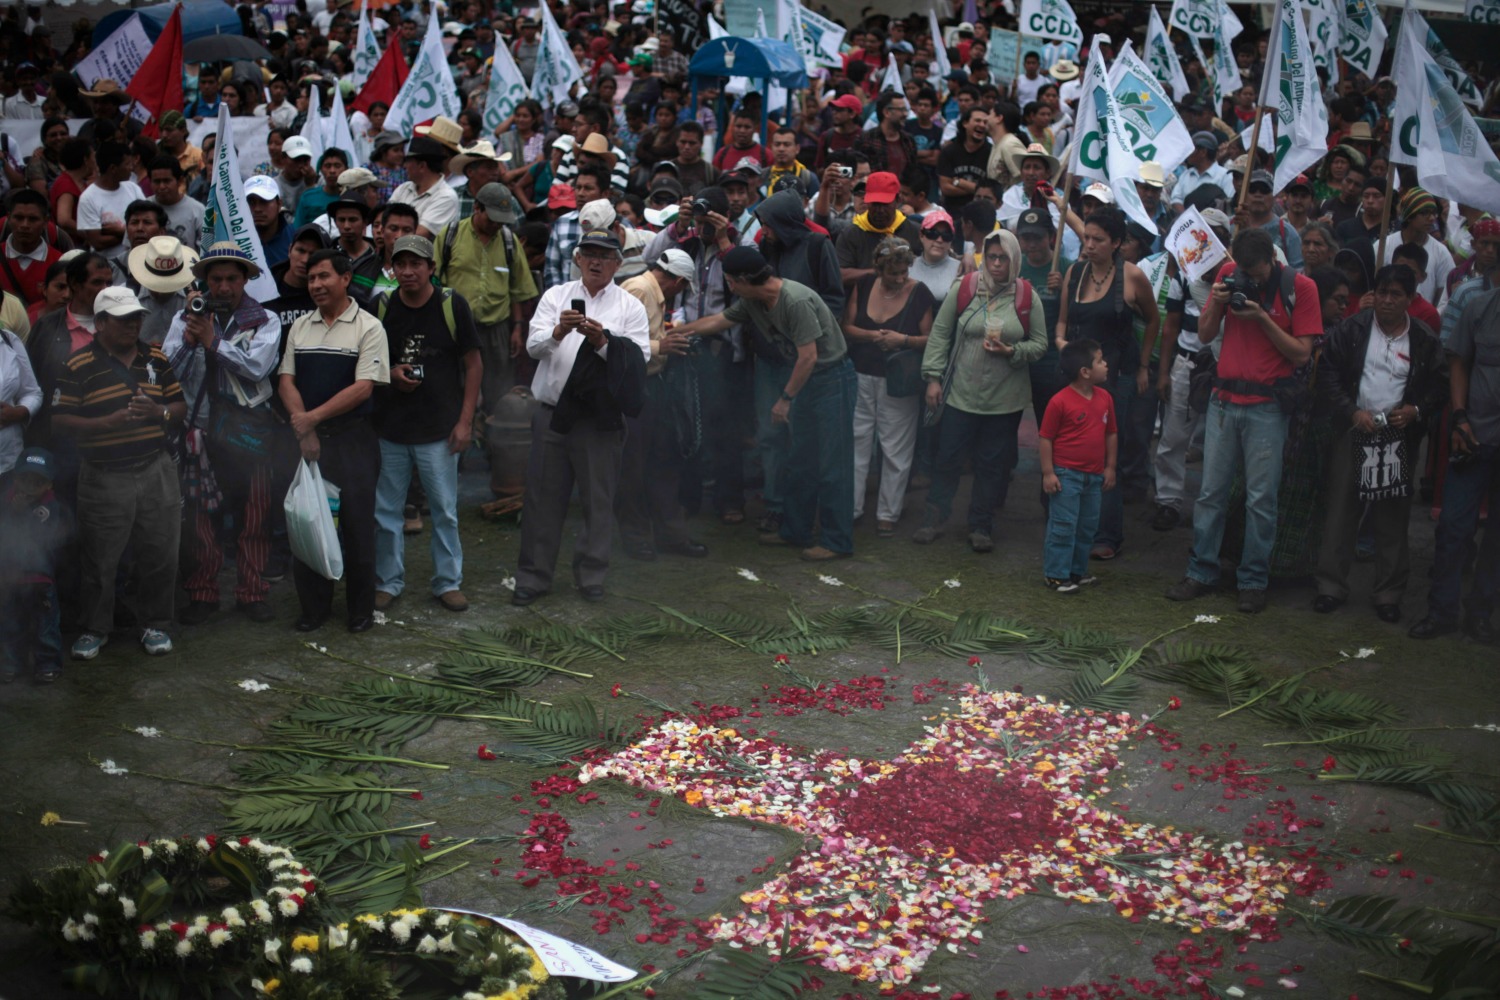 Los campesinos y grupos mayas celebran actos reivindicativos en Guatemala